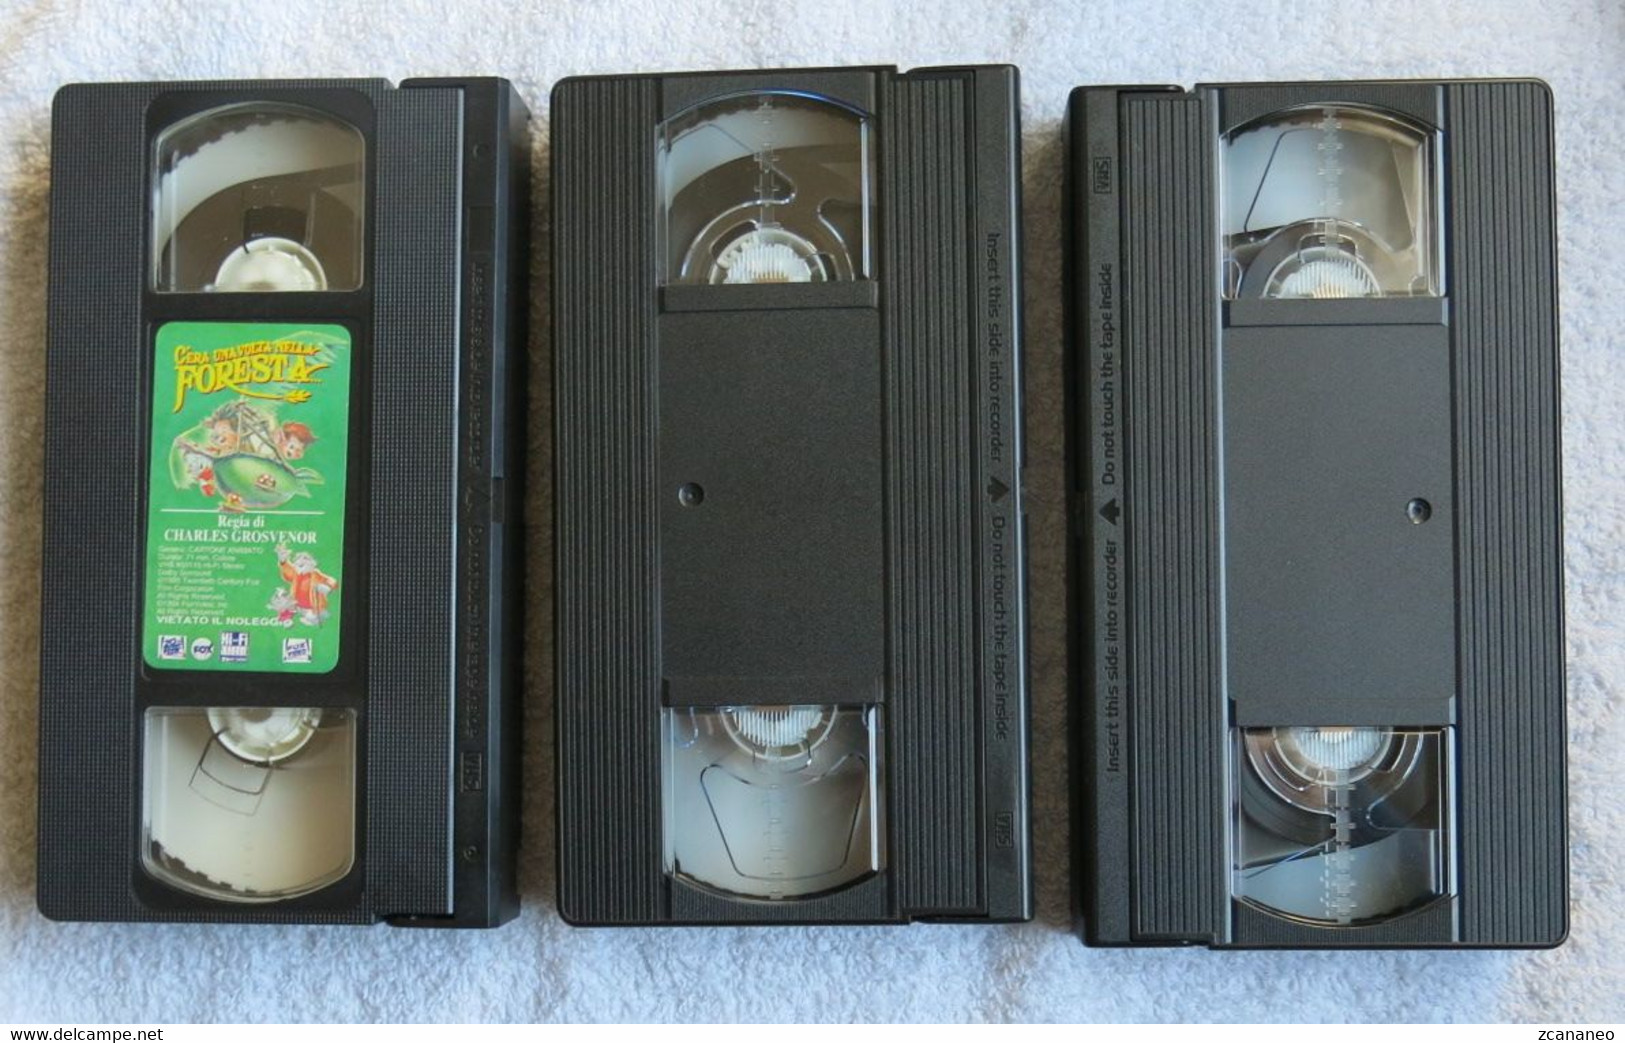 3 VHS CARTONI ANIMATI-C'ERA UNA VOLTA NELLA FORESTA-POCAHONTA-BABE MAIALINO CORAGGIOSO - - Dibujos Animados